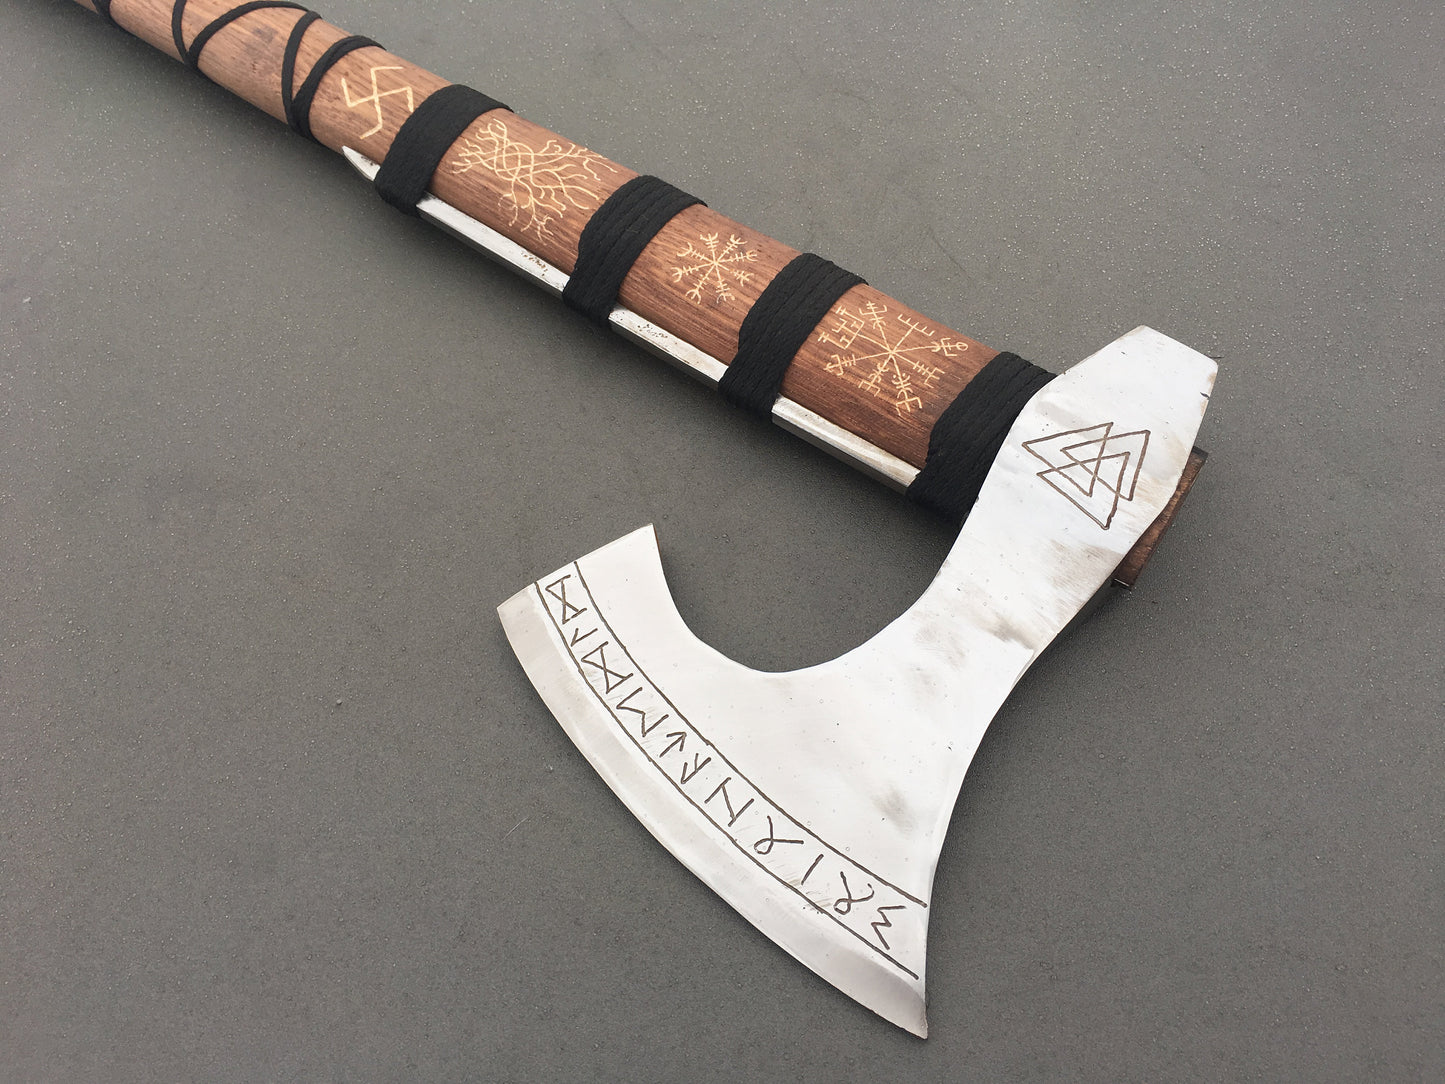 Runic axe, axe gift, Perun axe, pagan axe, viking axe, vegvisir, helm of awe, Yggdrasil,bearded axe,Norse axe,mjolnir,viking weapon